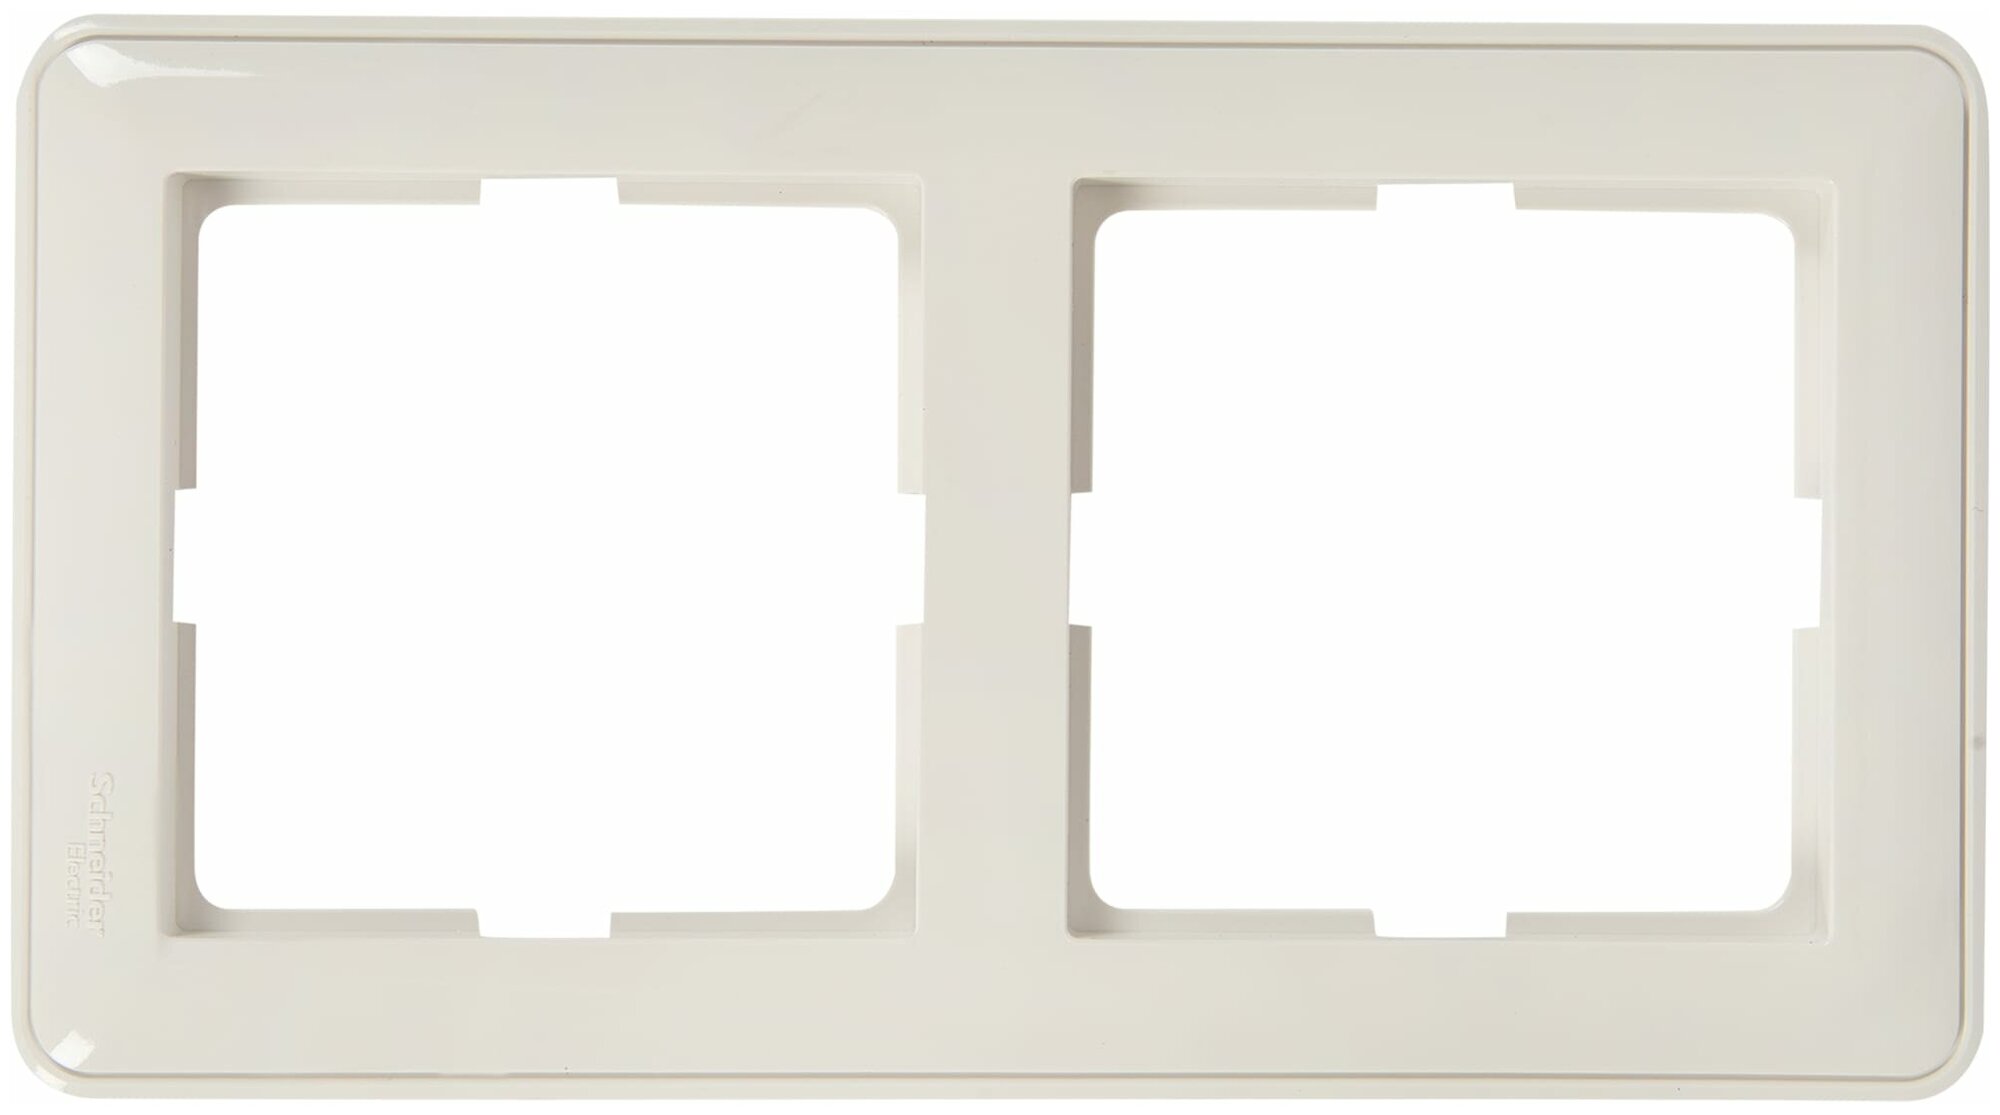 Рамка для розеток и выключателей Schneider Electric W59 2 поста цвет белый. Набор из 3 шт.